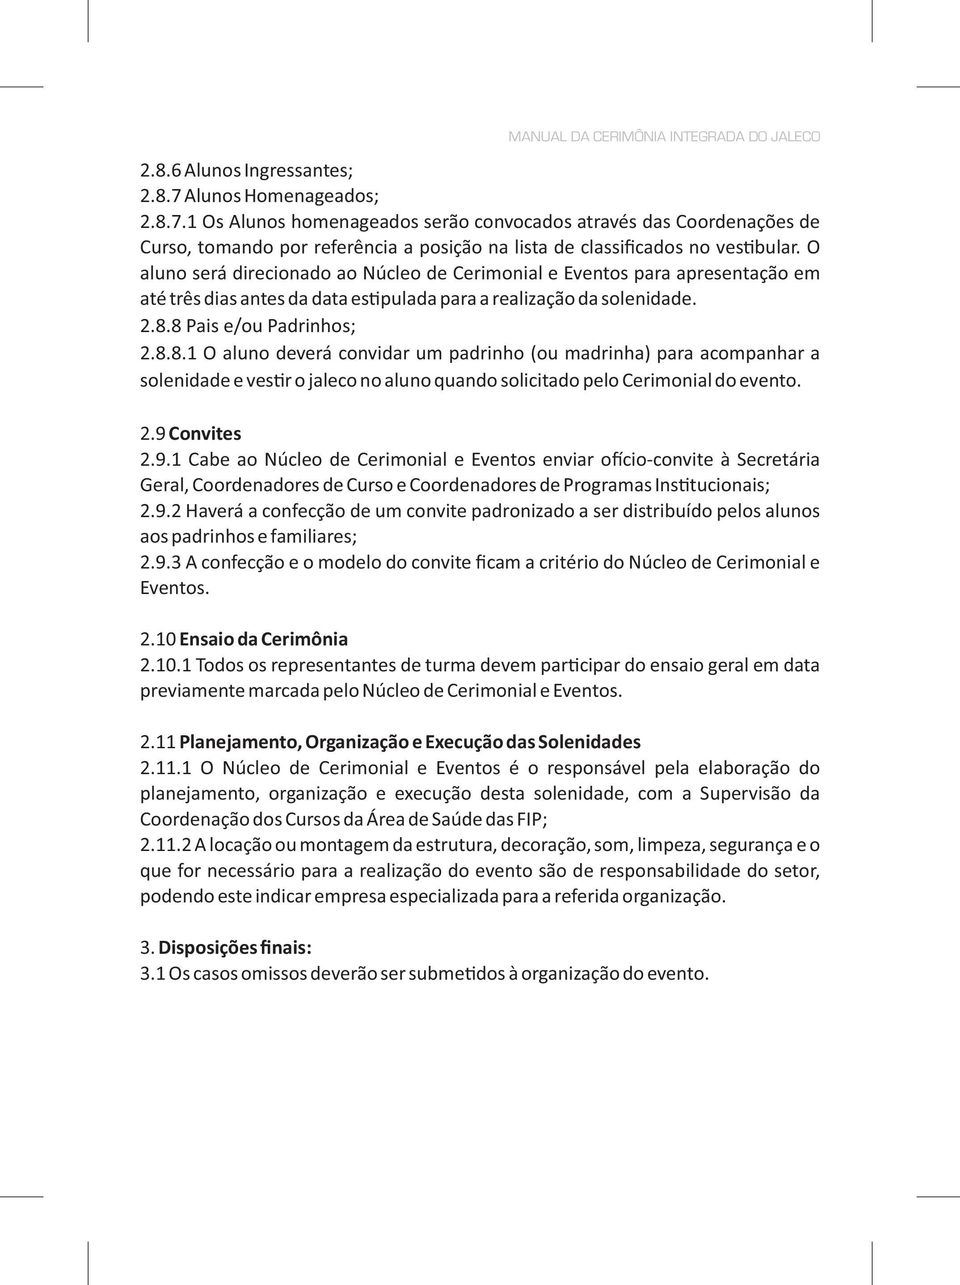 Cerimônia Integrada do Jaleco - PDF Download grátis